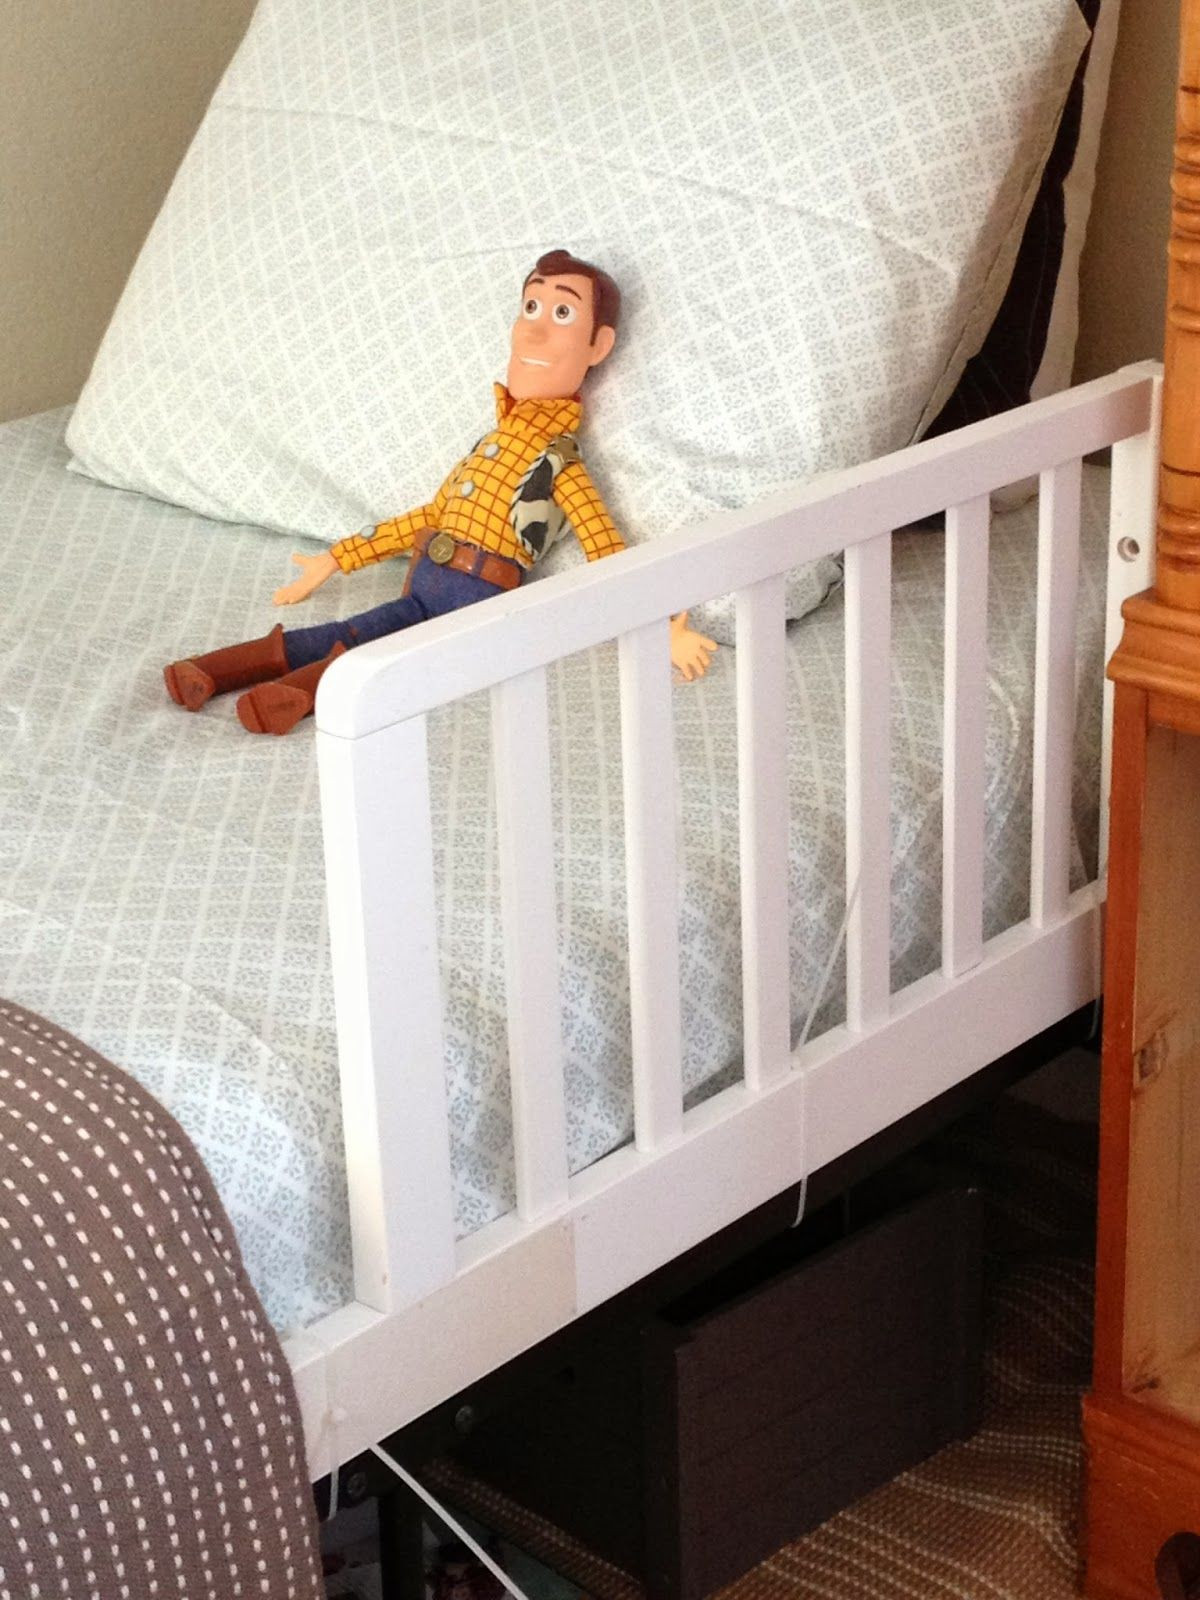 DIY Bed Rail For Toddler
 Boys Bedroom Bed frame for life